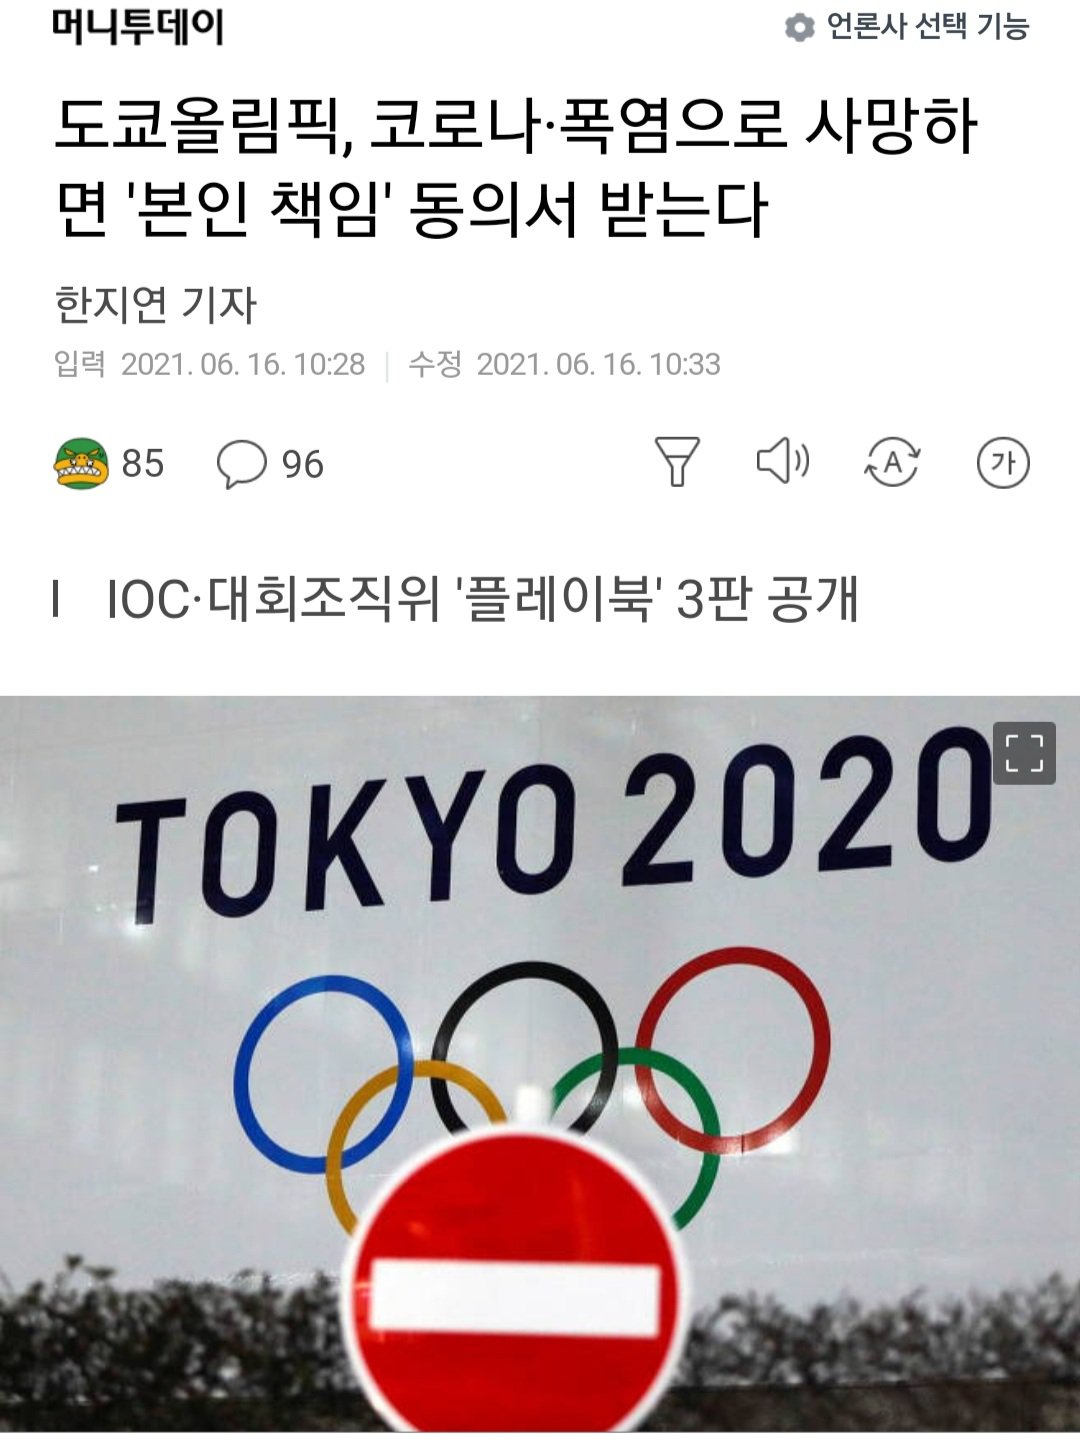 일본이 올림픽 참가 선수들에게 받는 동의서